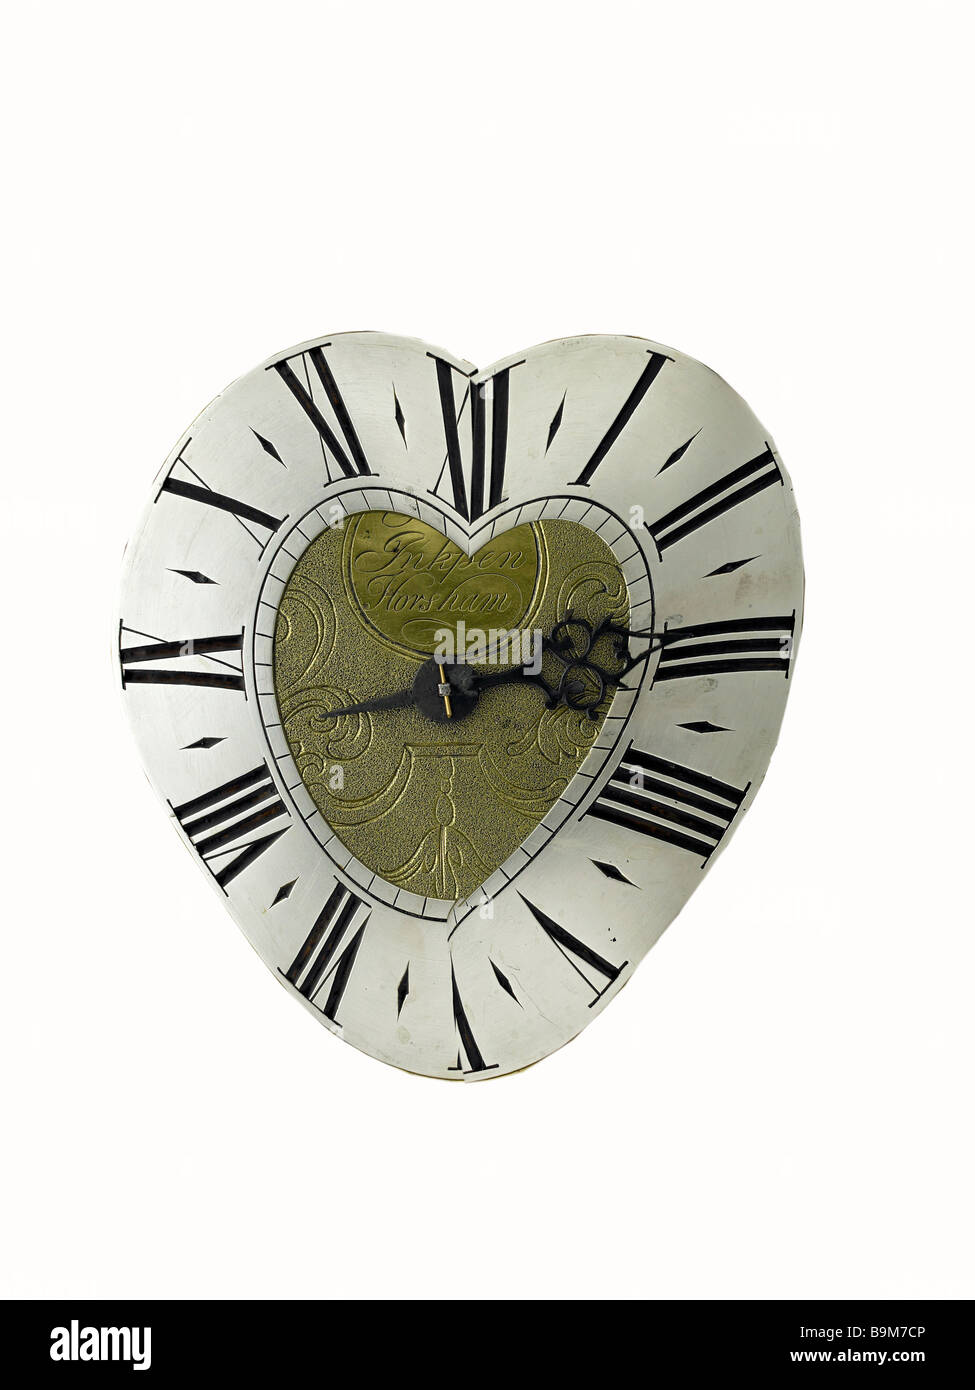 heart shaped clock Stock Photo